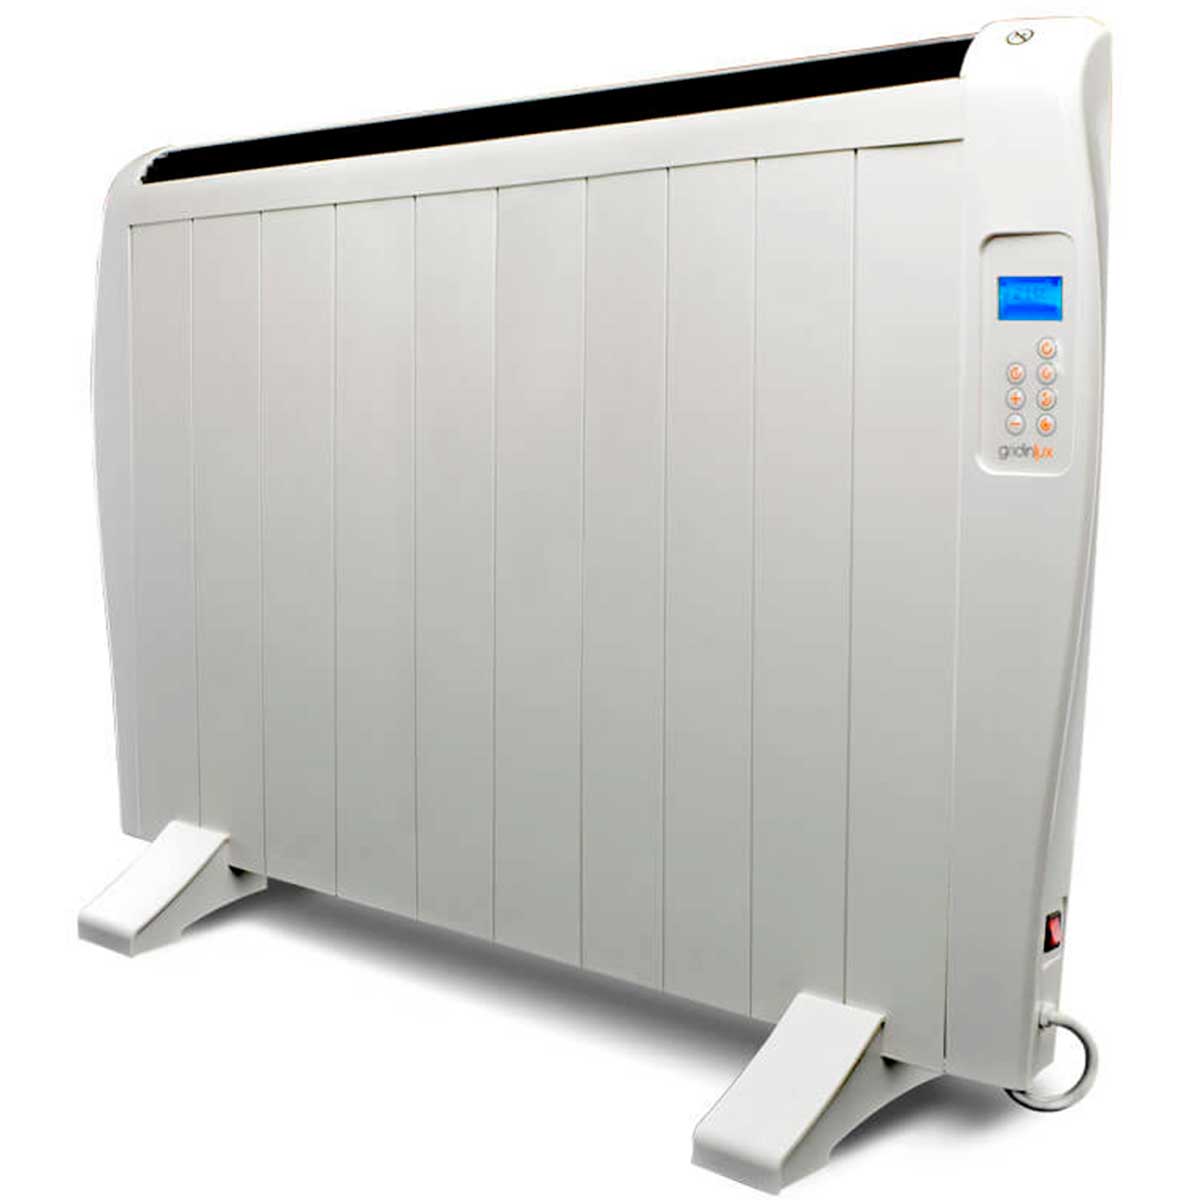 El radiador de bajo consumo de Cecotec: eficiencia y confort en tu